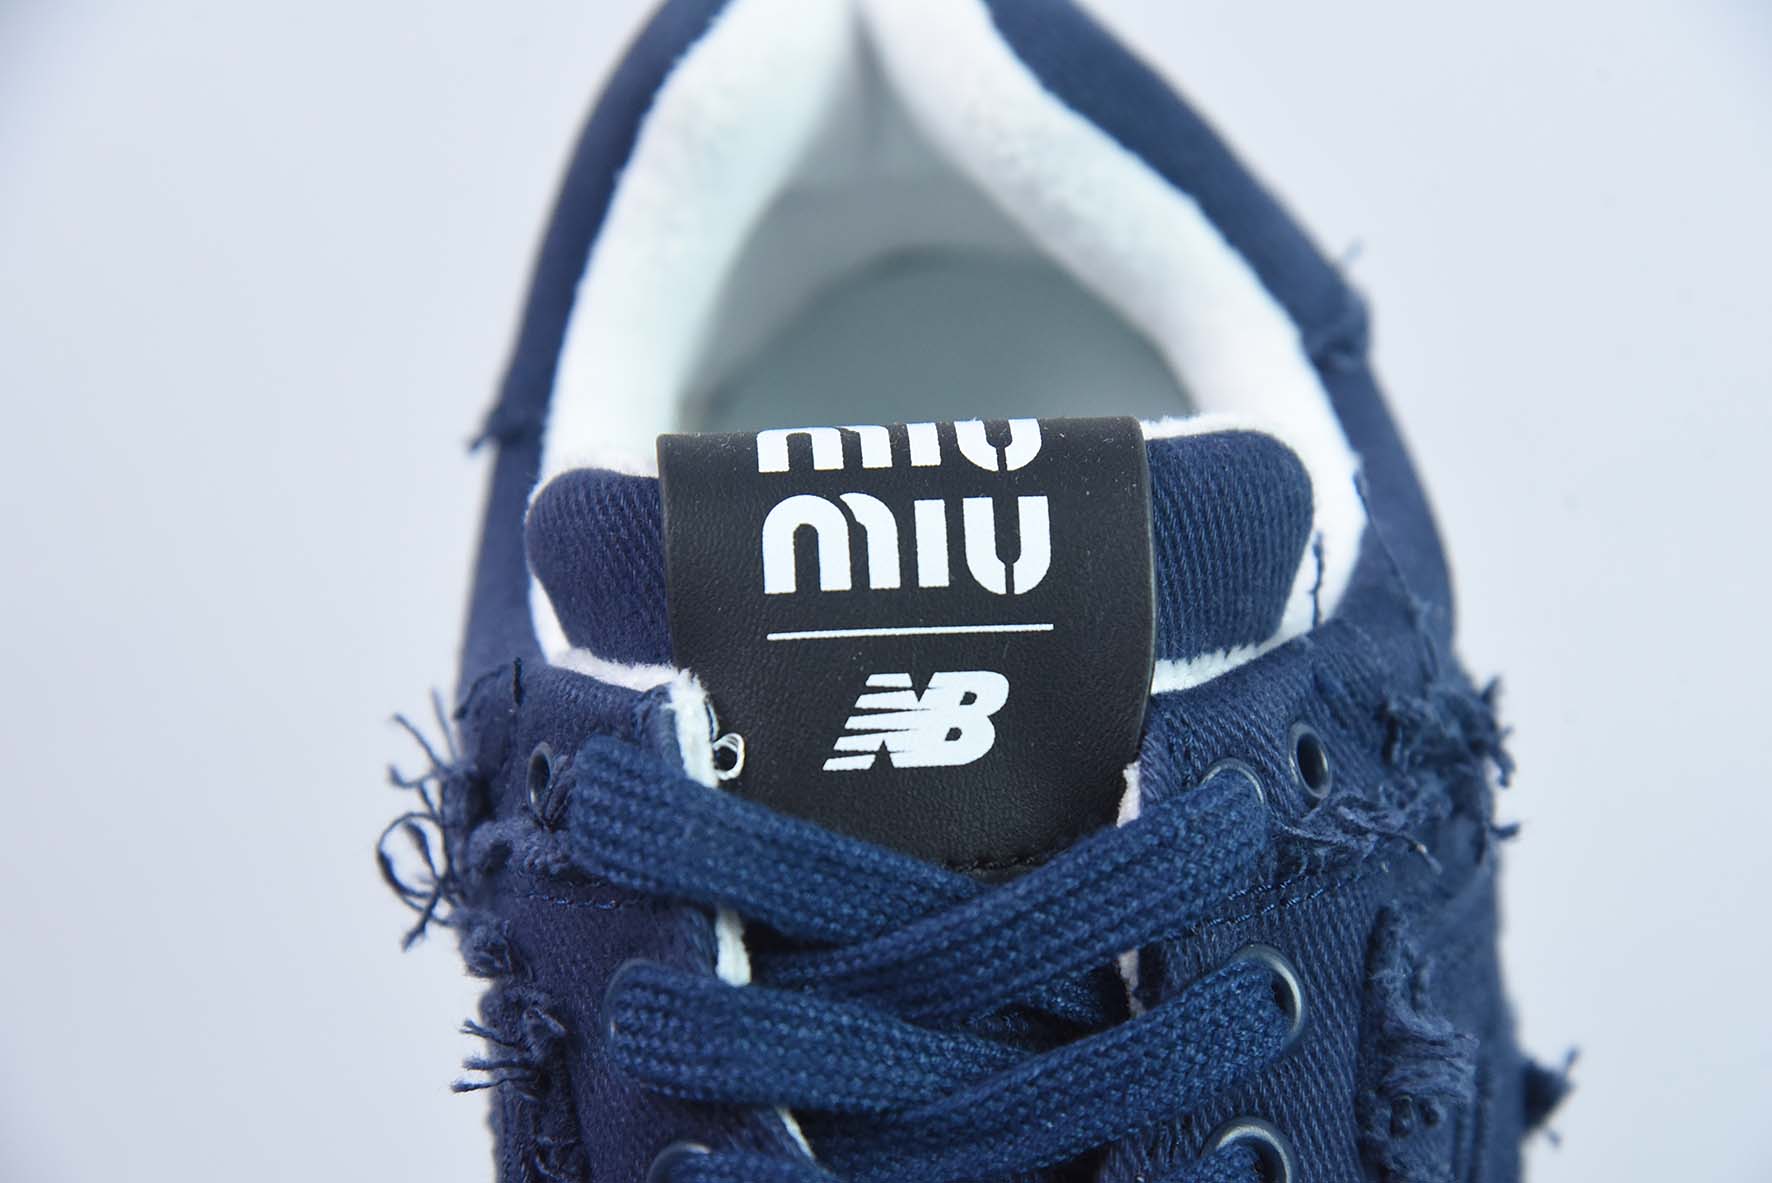 MIU MIU x NB 574 人气联名女款运动鞋